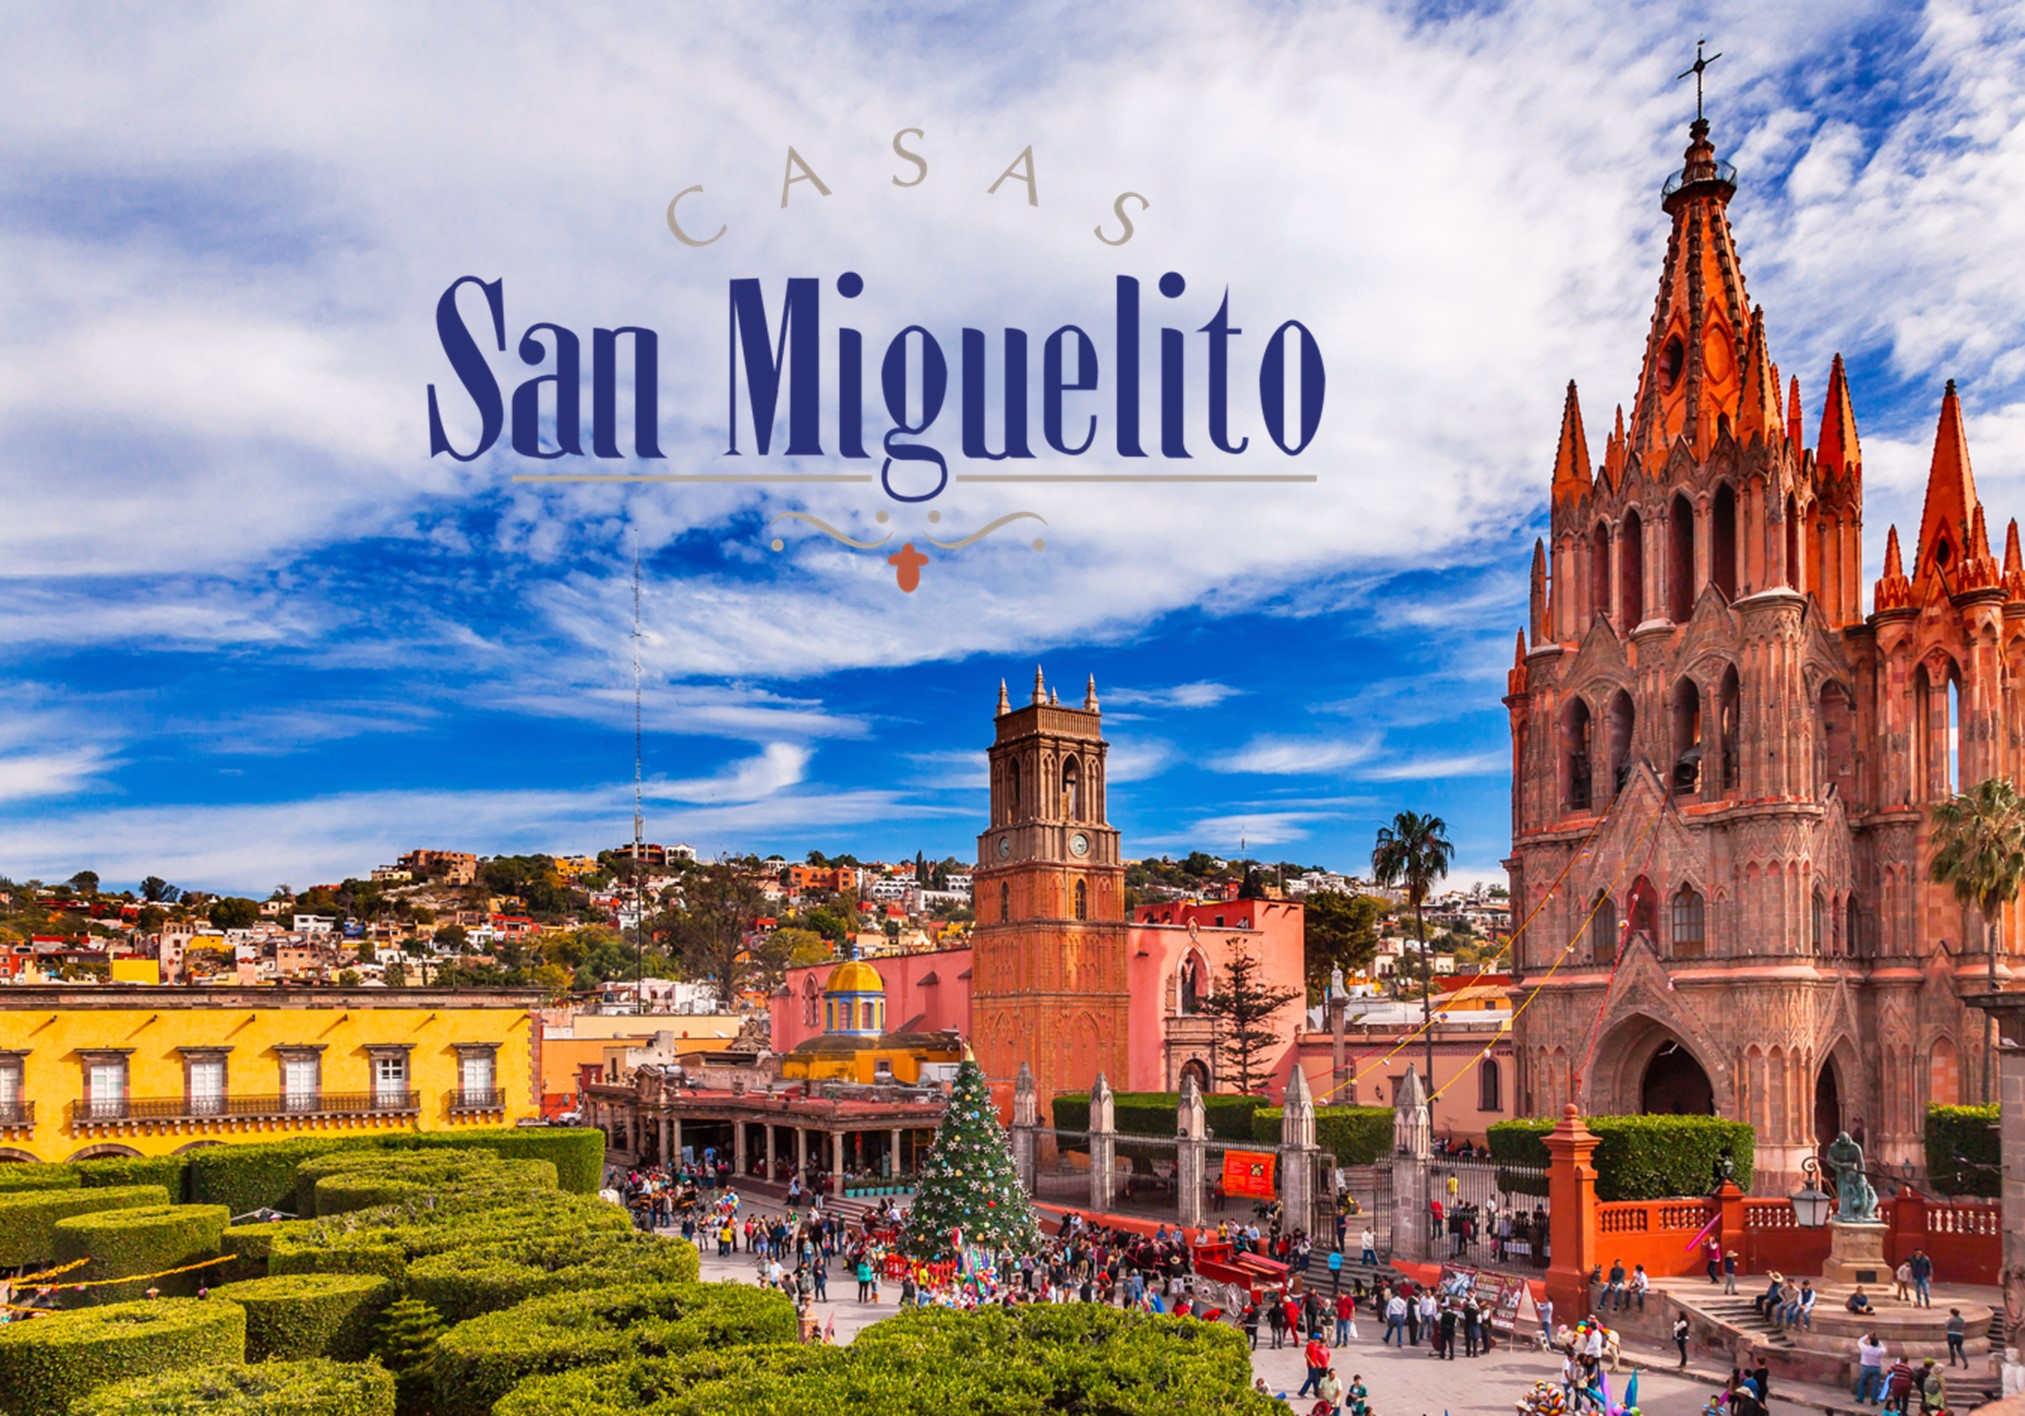 Casas San Miguelito: empresa comprometida con los sanmiguelenses -  Industrias México